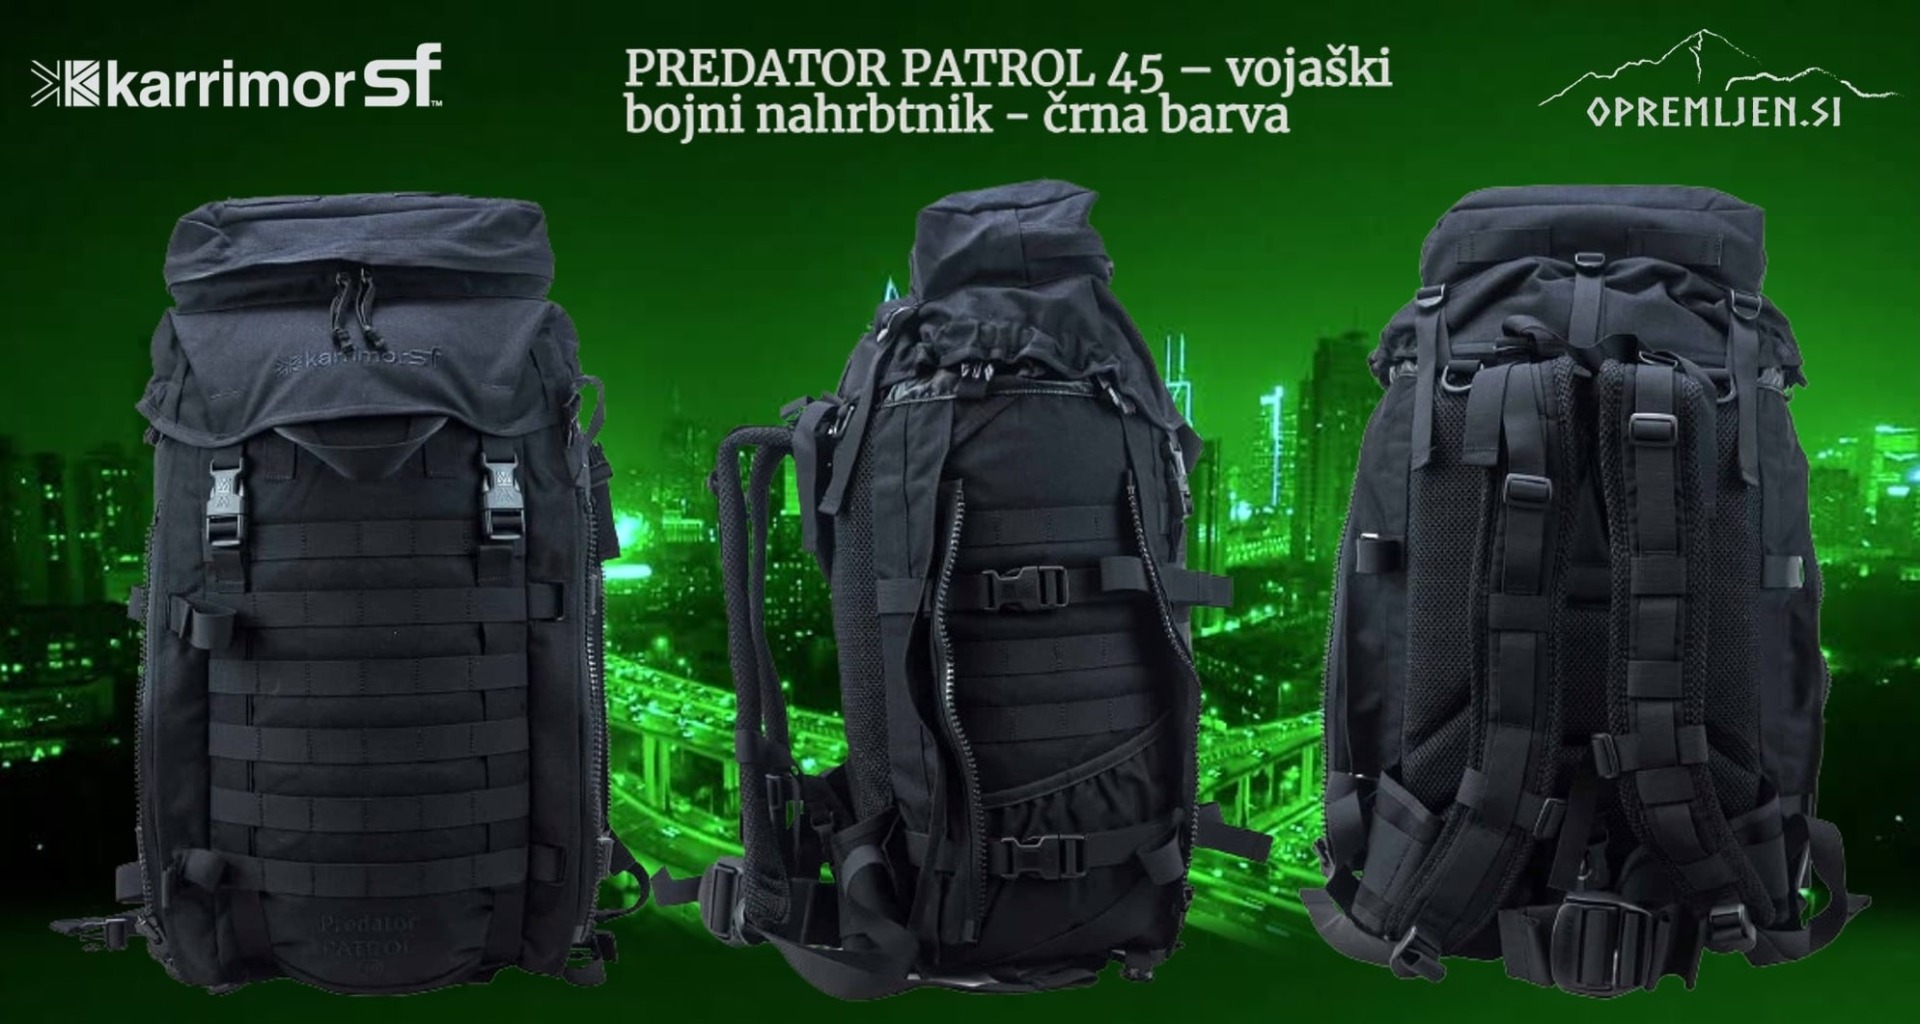 Karrimor SF Predator Patrol 45 vojaški nahrbtnik je idealen spremljevalec za vsako avanturo. Izdelan iz trpežnega materiala in opremljen z večnamenskimi žepi ter odstranljivim sprednjim žepom, zagotavlja prostor za vse vaše potrebščine. Vrhunsko oblazinje